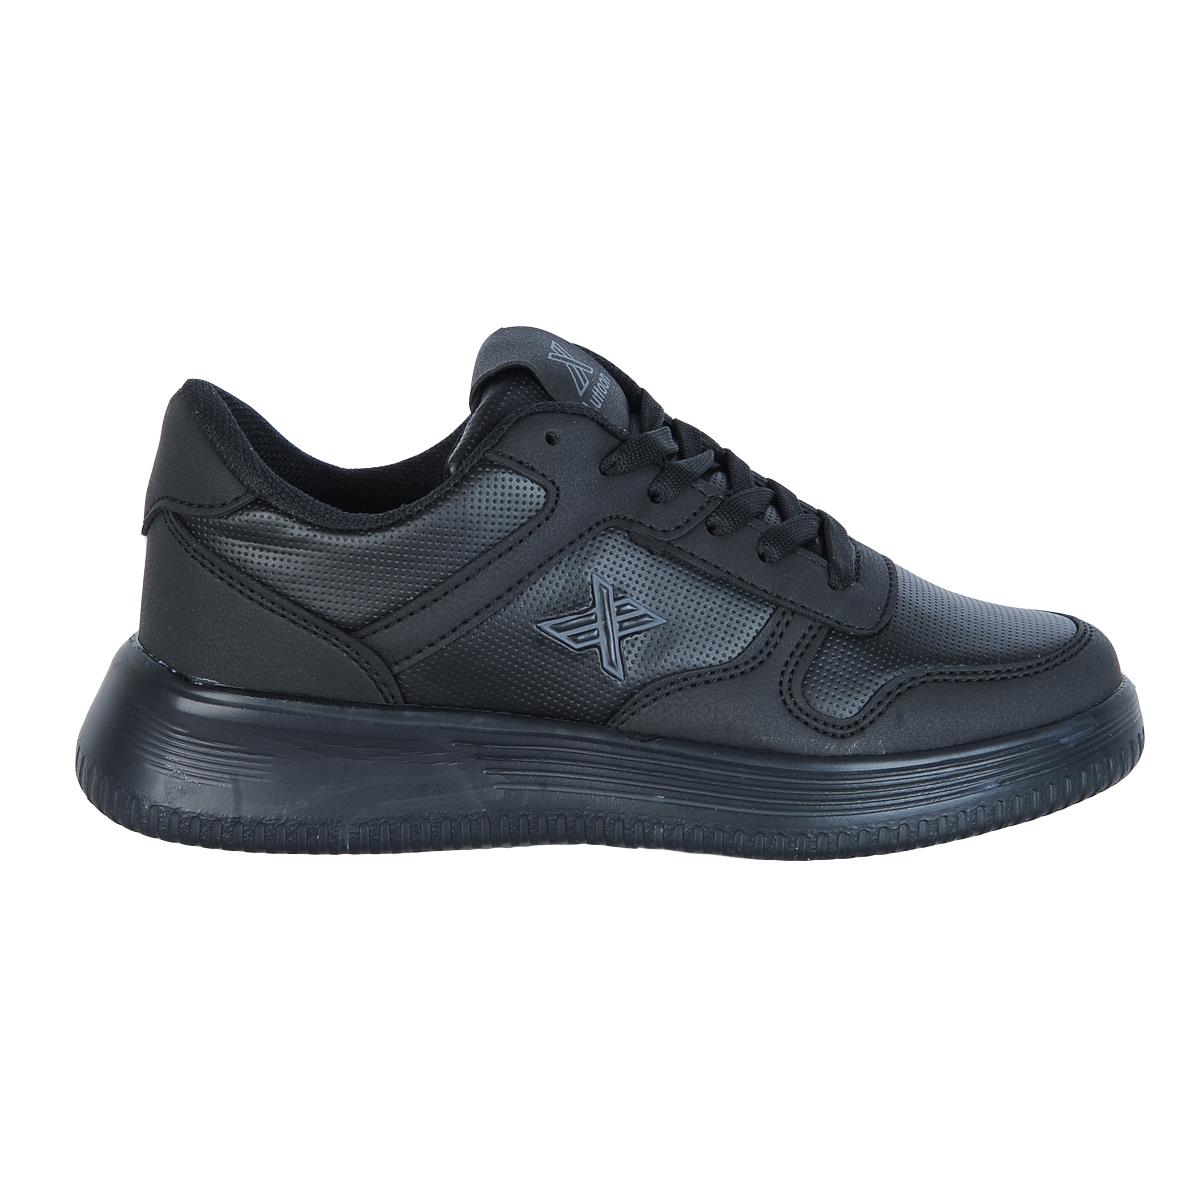 Luttoon Prt-4027 Siyah Kadın Sneaker Spor Ayakkabı